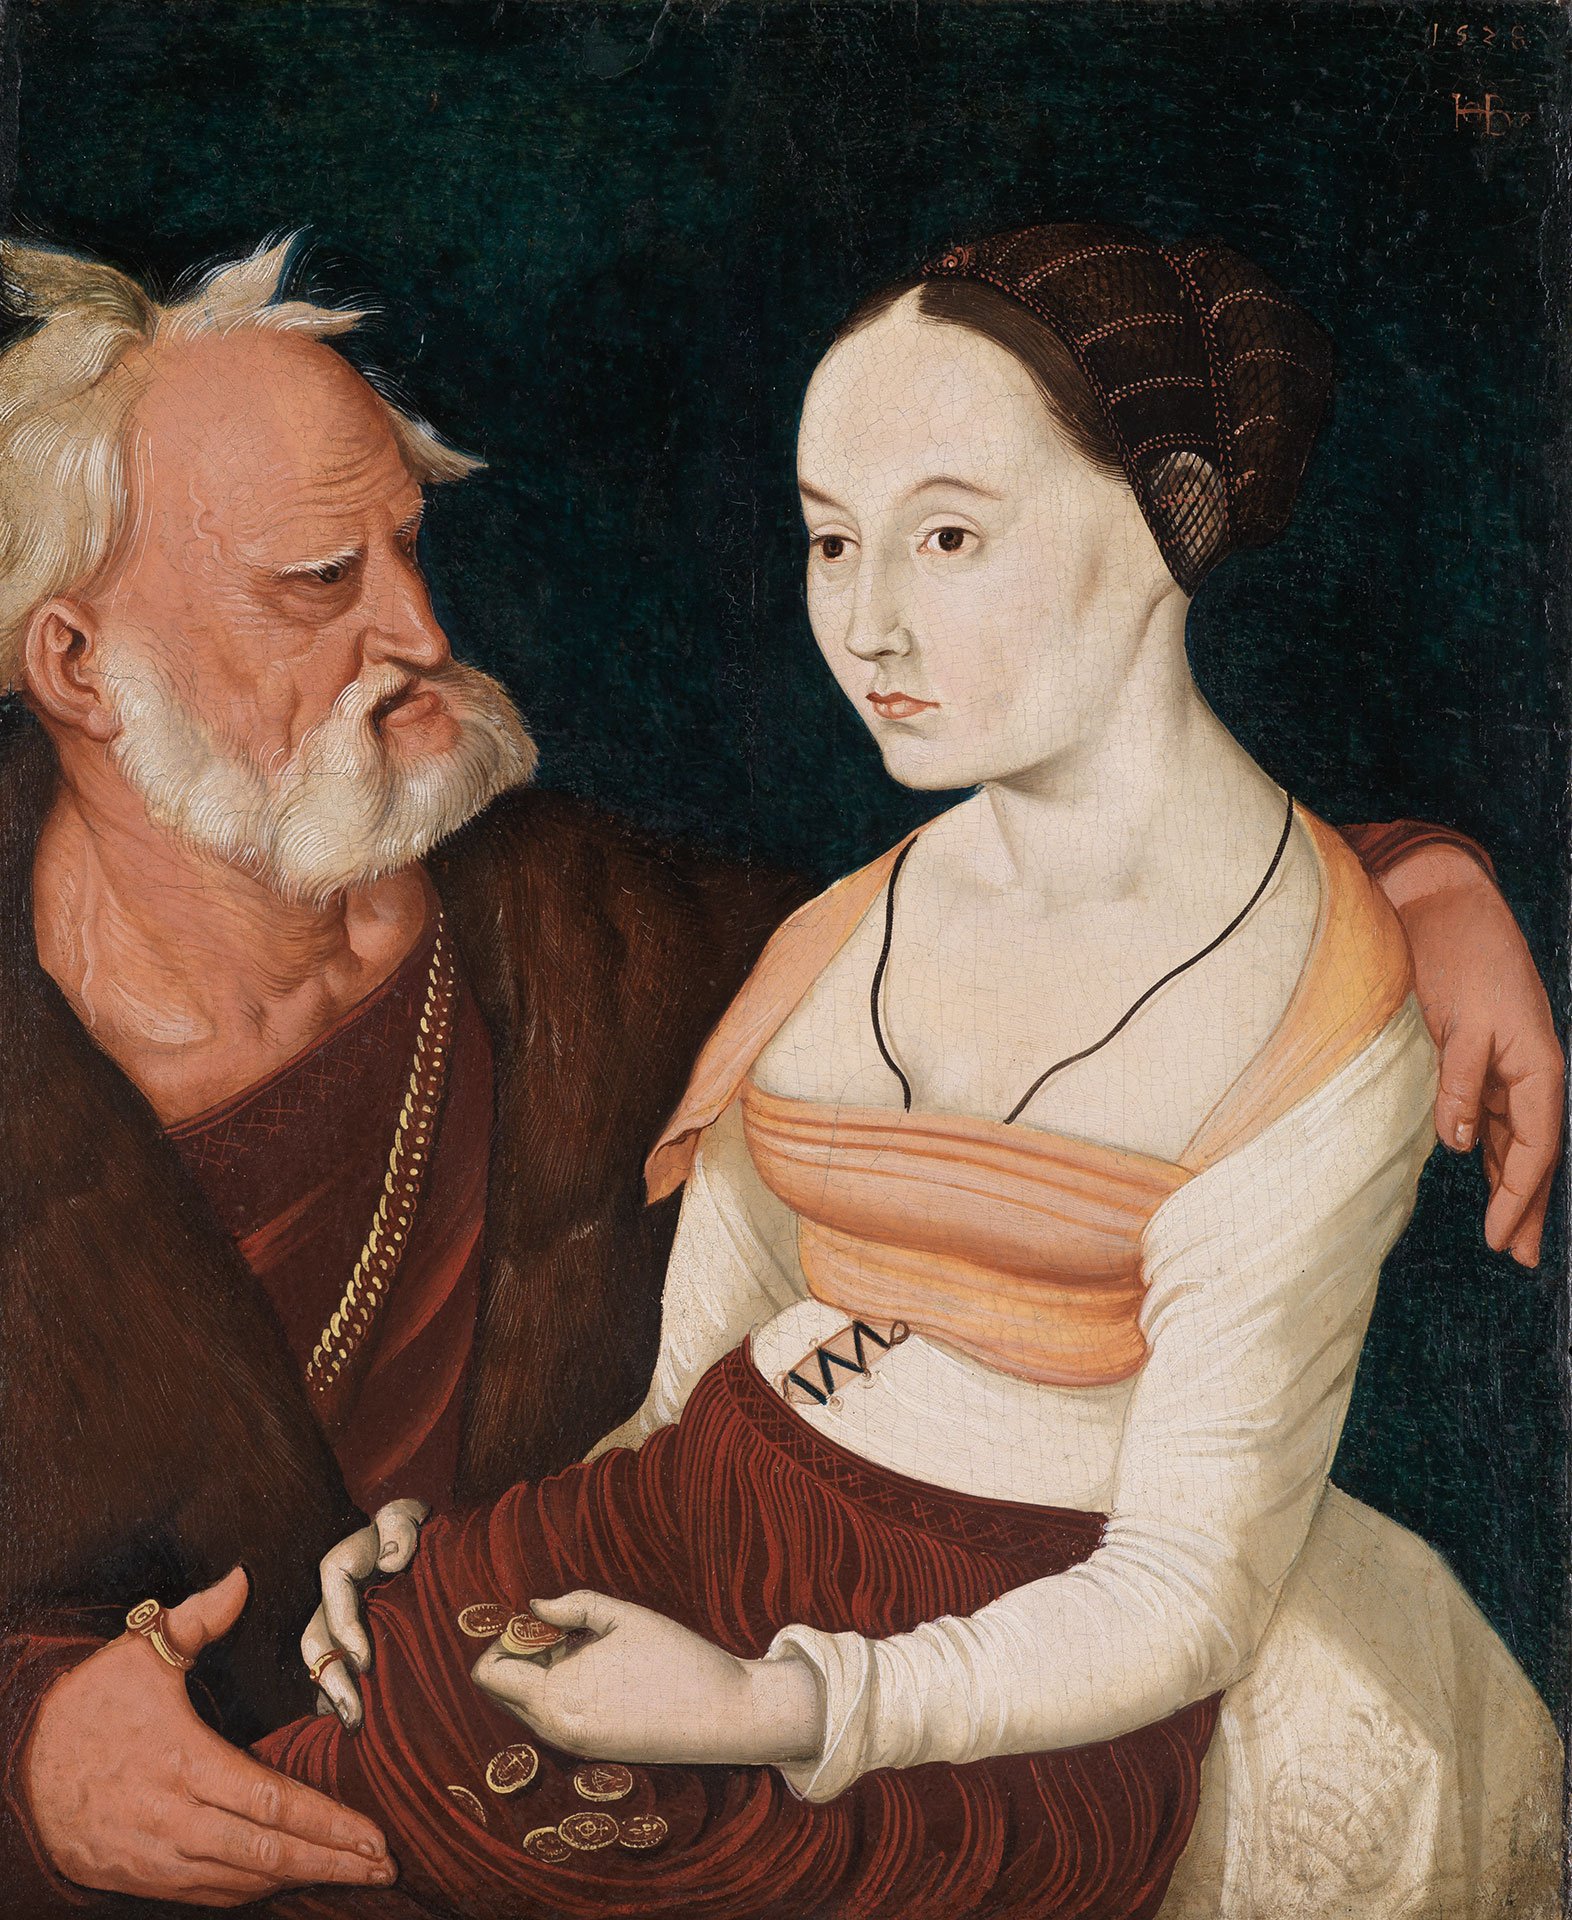 Eine junge Frau sitzt und hat Geldmünzen in ihrer Schürze. Links sitzt ein alter Mann und legt seine Hand um die Frau.